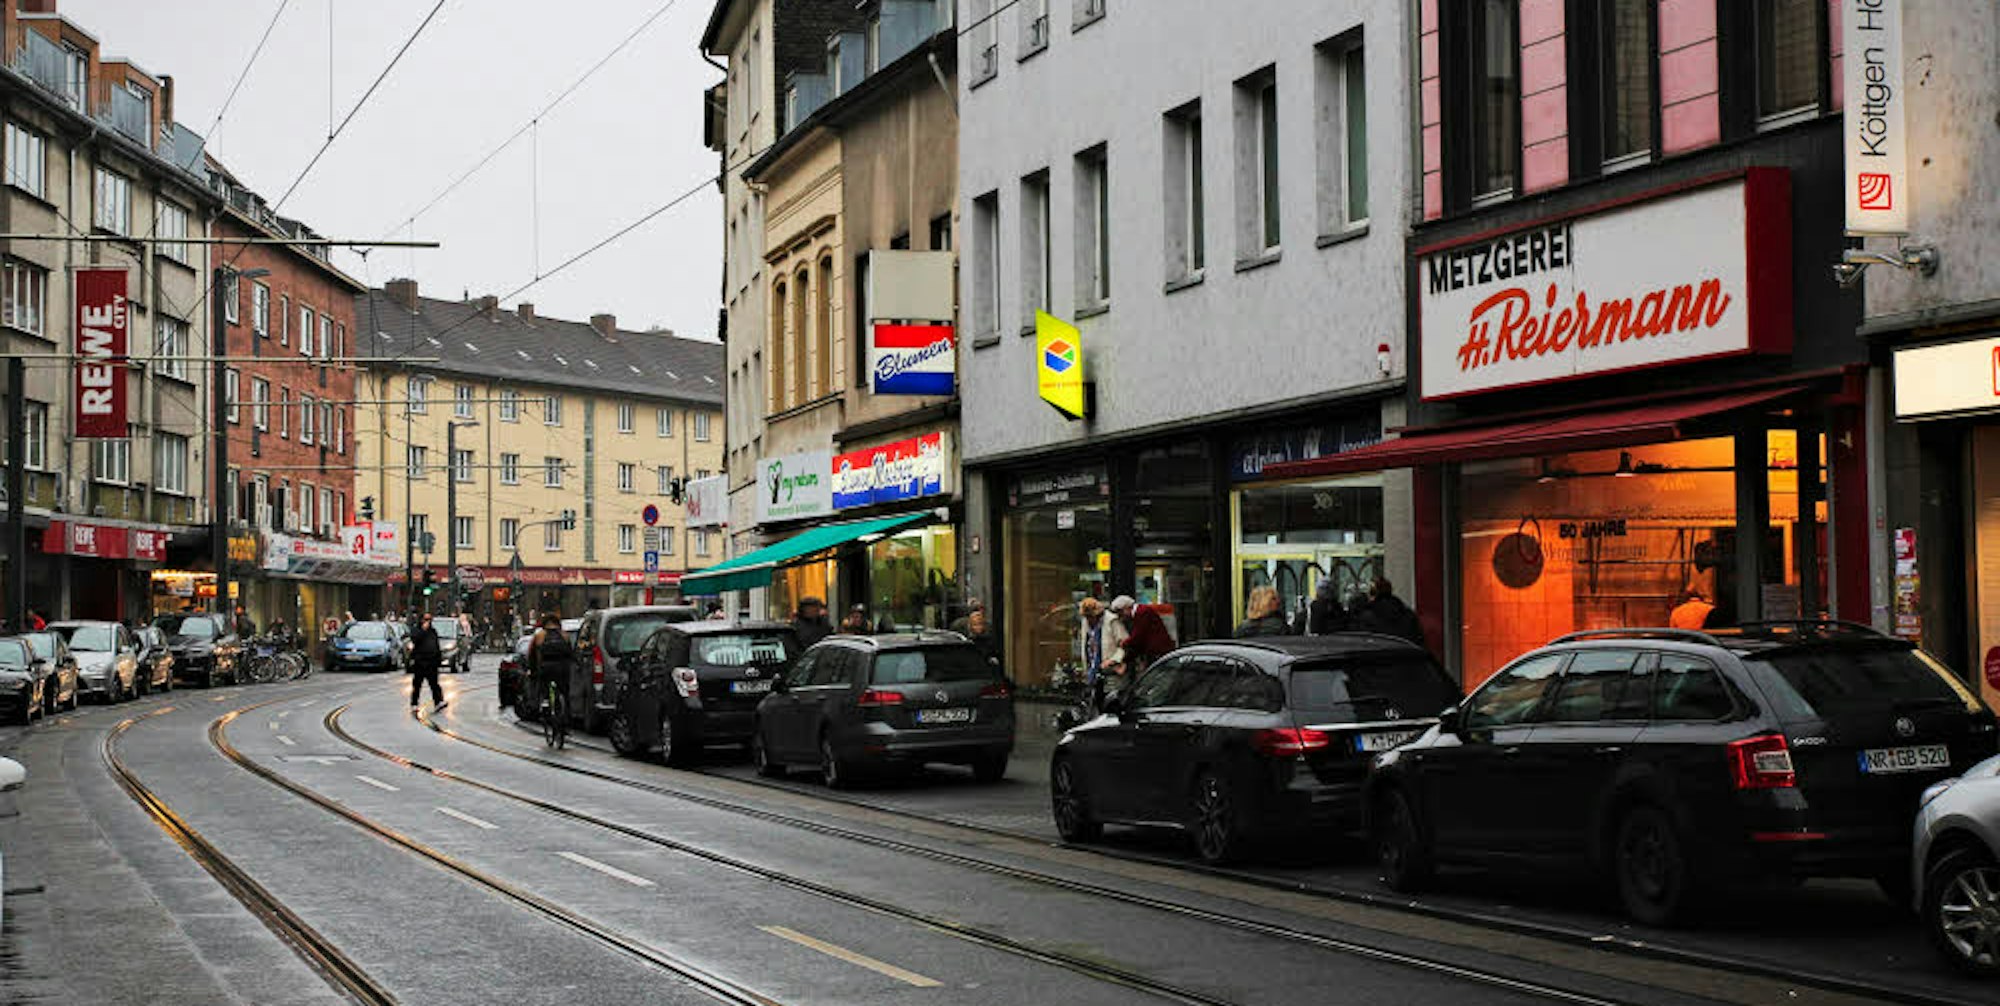 Für die kleinen Läden auf dem Höninger Weg wird es schwieriger, trotz Stadtbahnanbindung und Kundenmagneten wie dem Supermarkt an der Kreuzung mit dem Gottesweg.